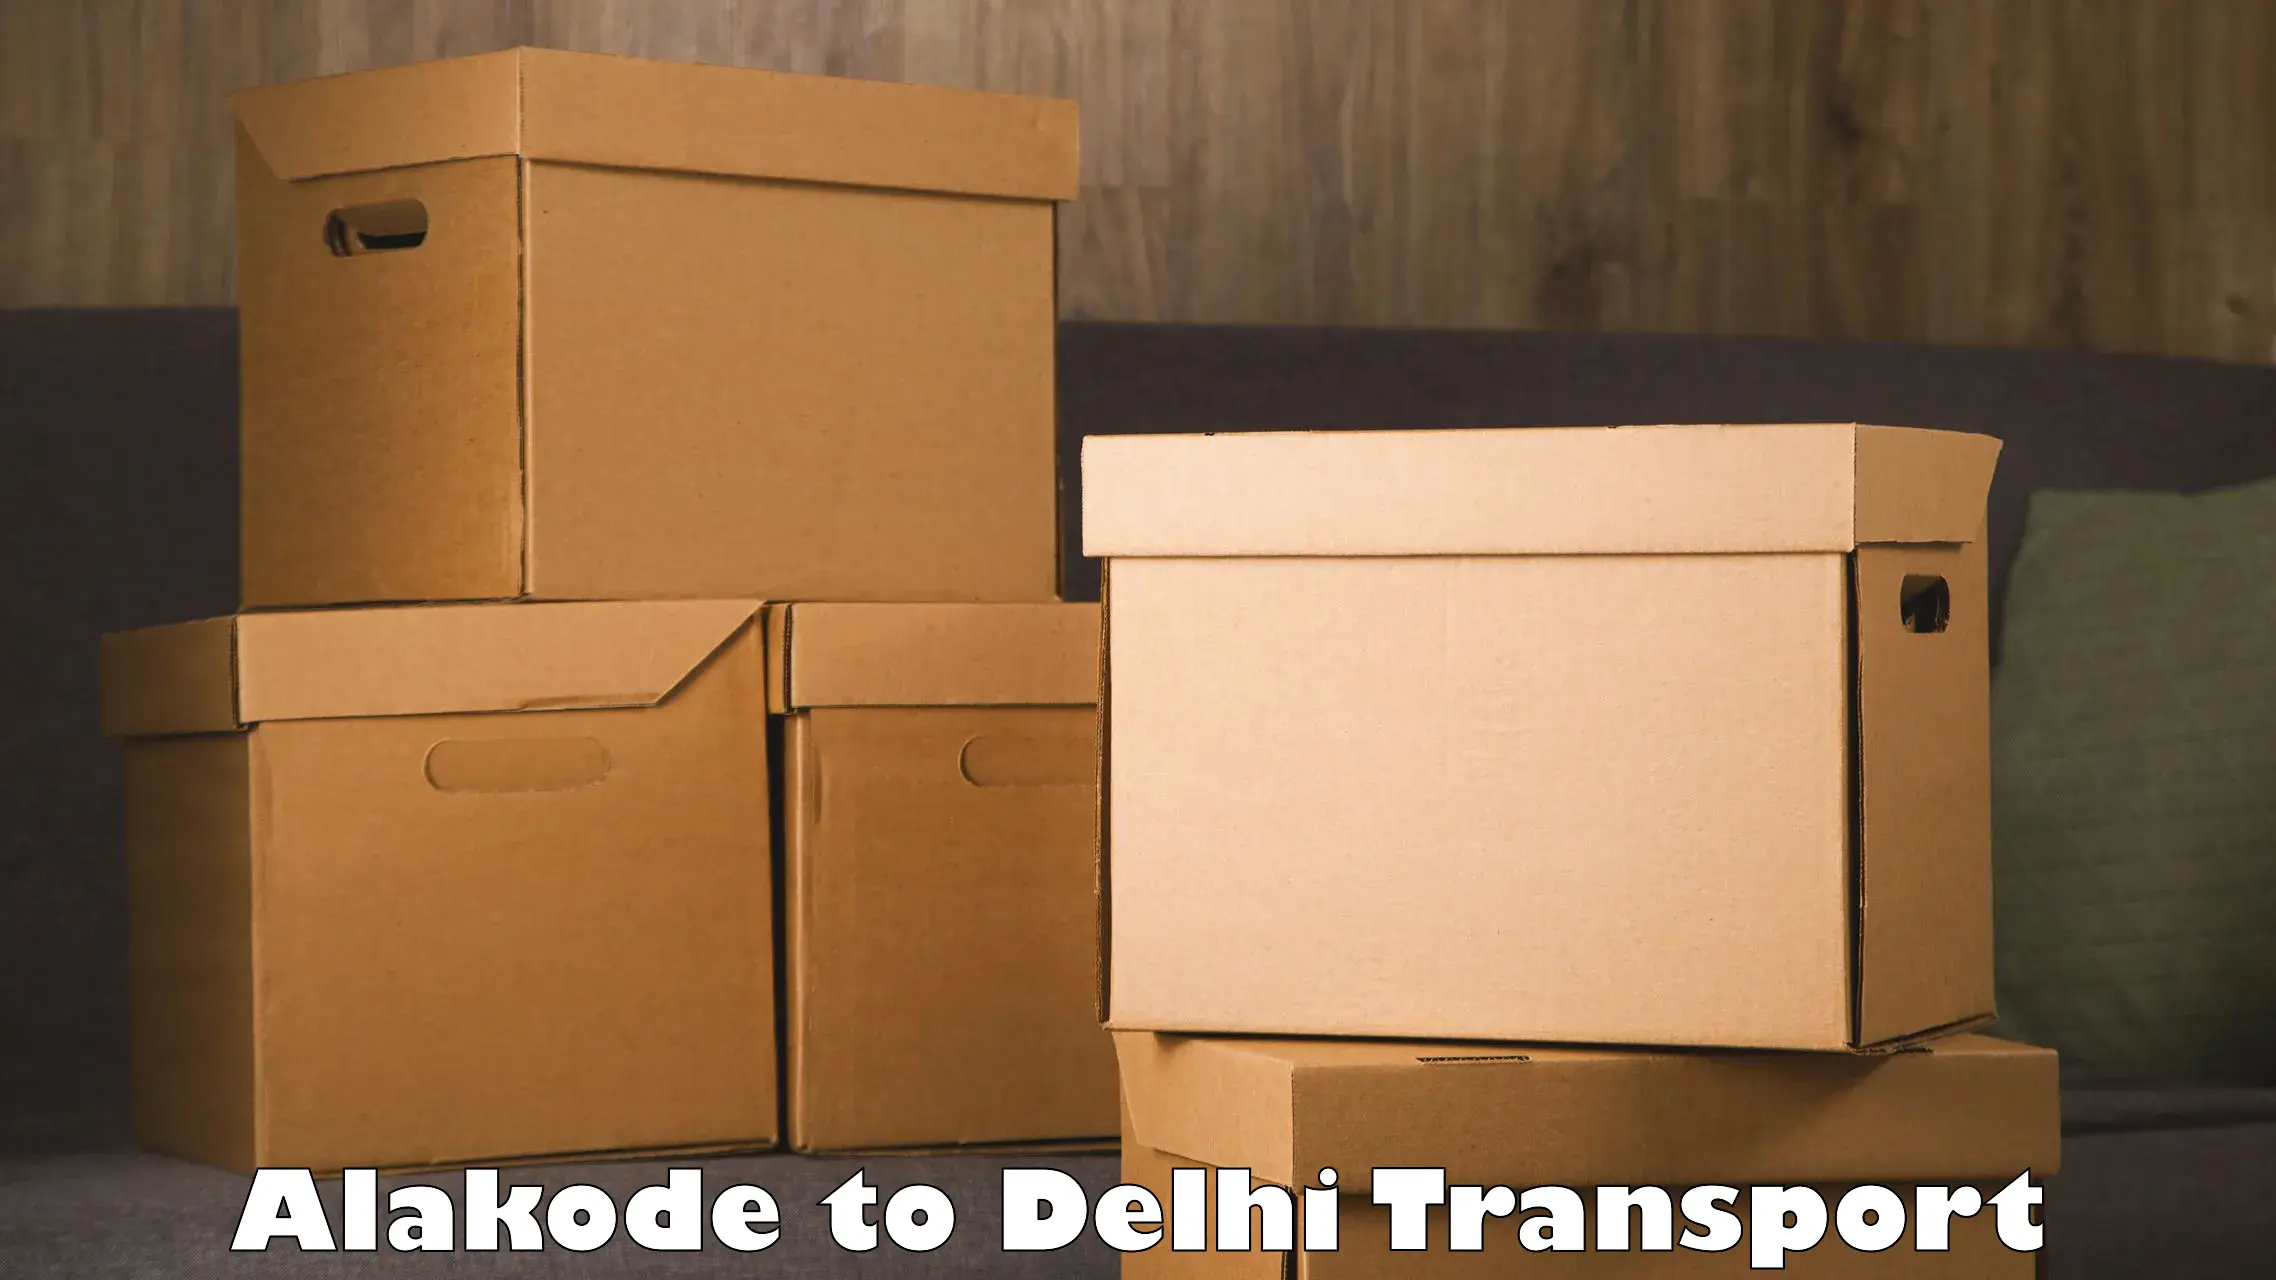 India truck logistics services Alakode to Delhi